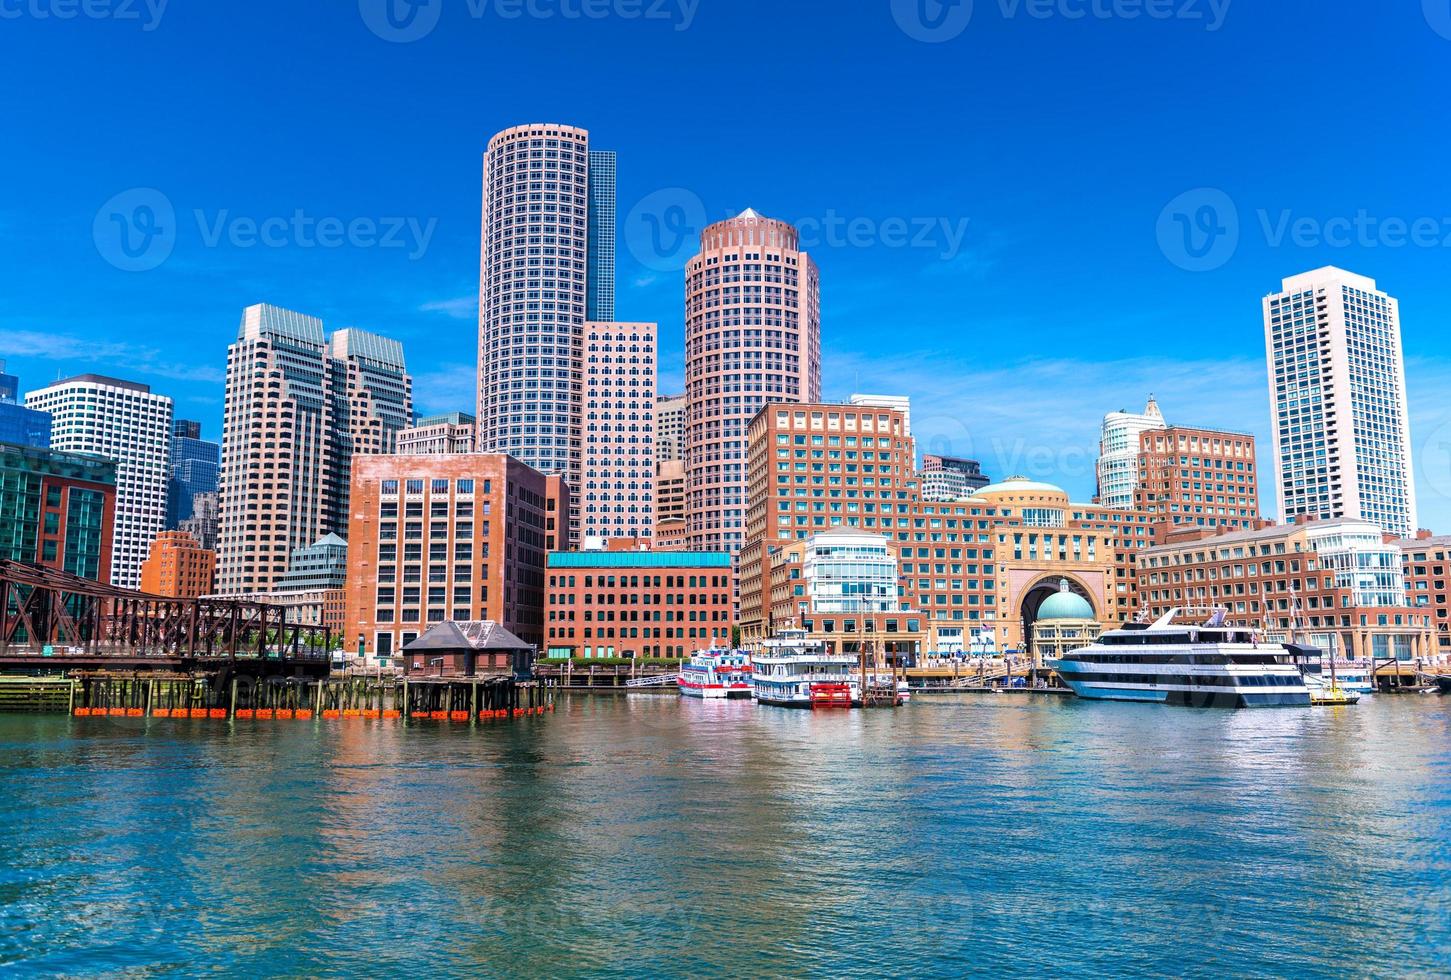 Boston-Stadtbild spiegelt sich in Wasser, Wolkenkratzern und Bürogebäuden in der Innenstadt, Blick vom Hafen von Boston, Massachusetts, USA foto